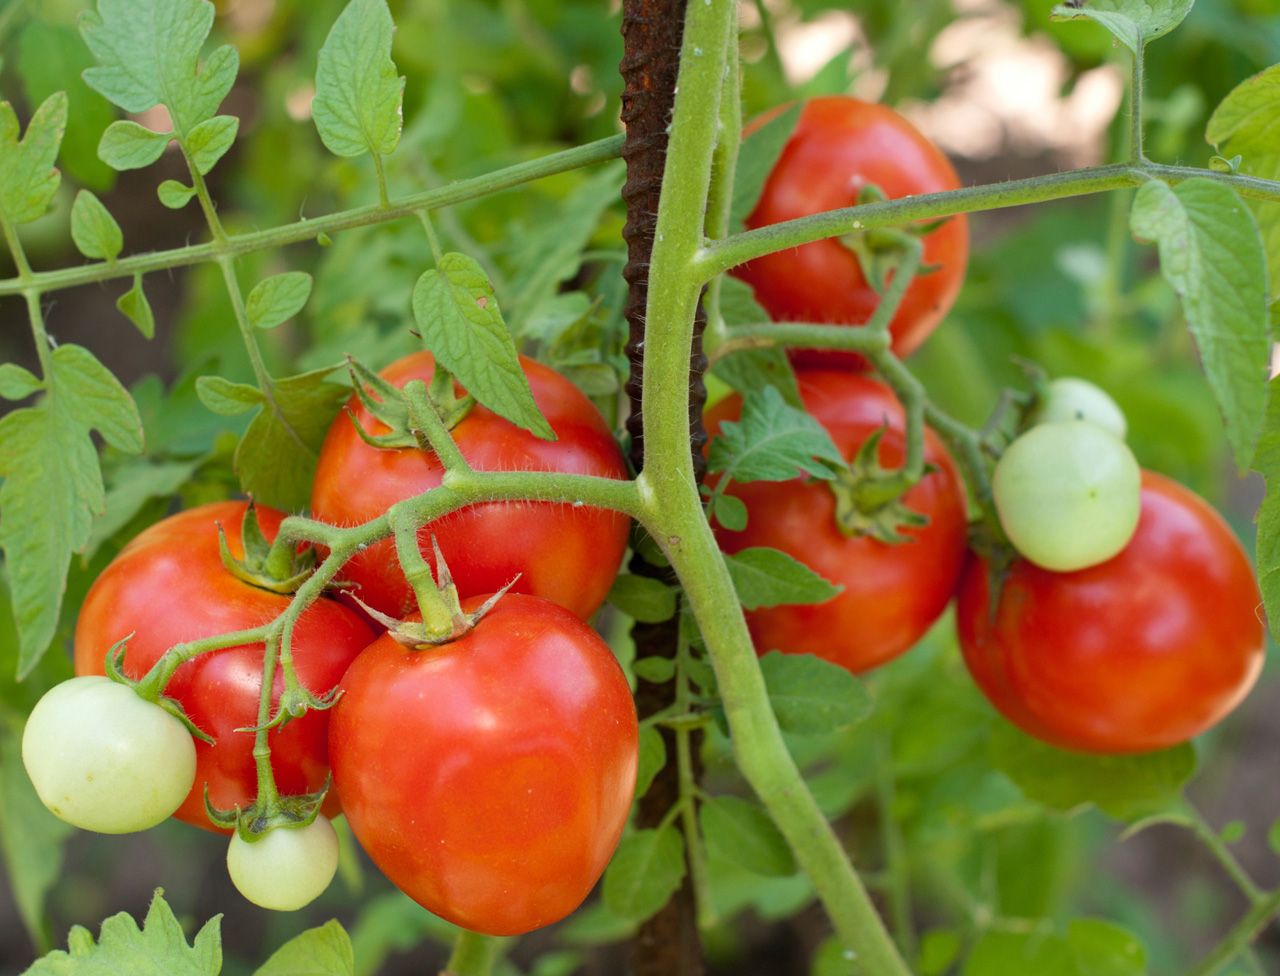 Εδώ είναι ο ΣΩΣΤΟΣ ΤΡΟΠΟΣ για να φυτέψετε ντομάτες (και να έχετε φυτά 2 μέτρα ύψος).